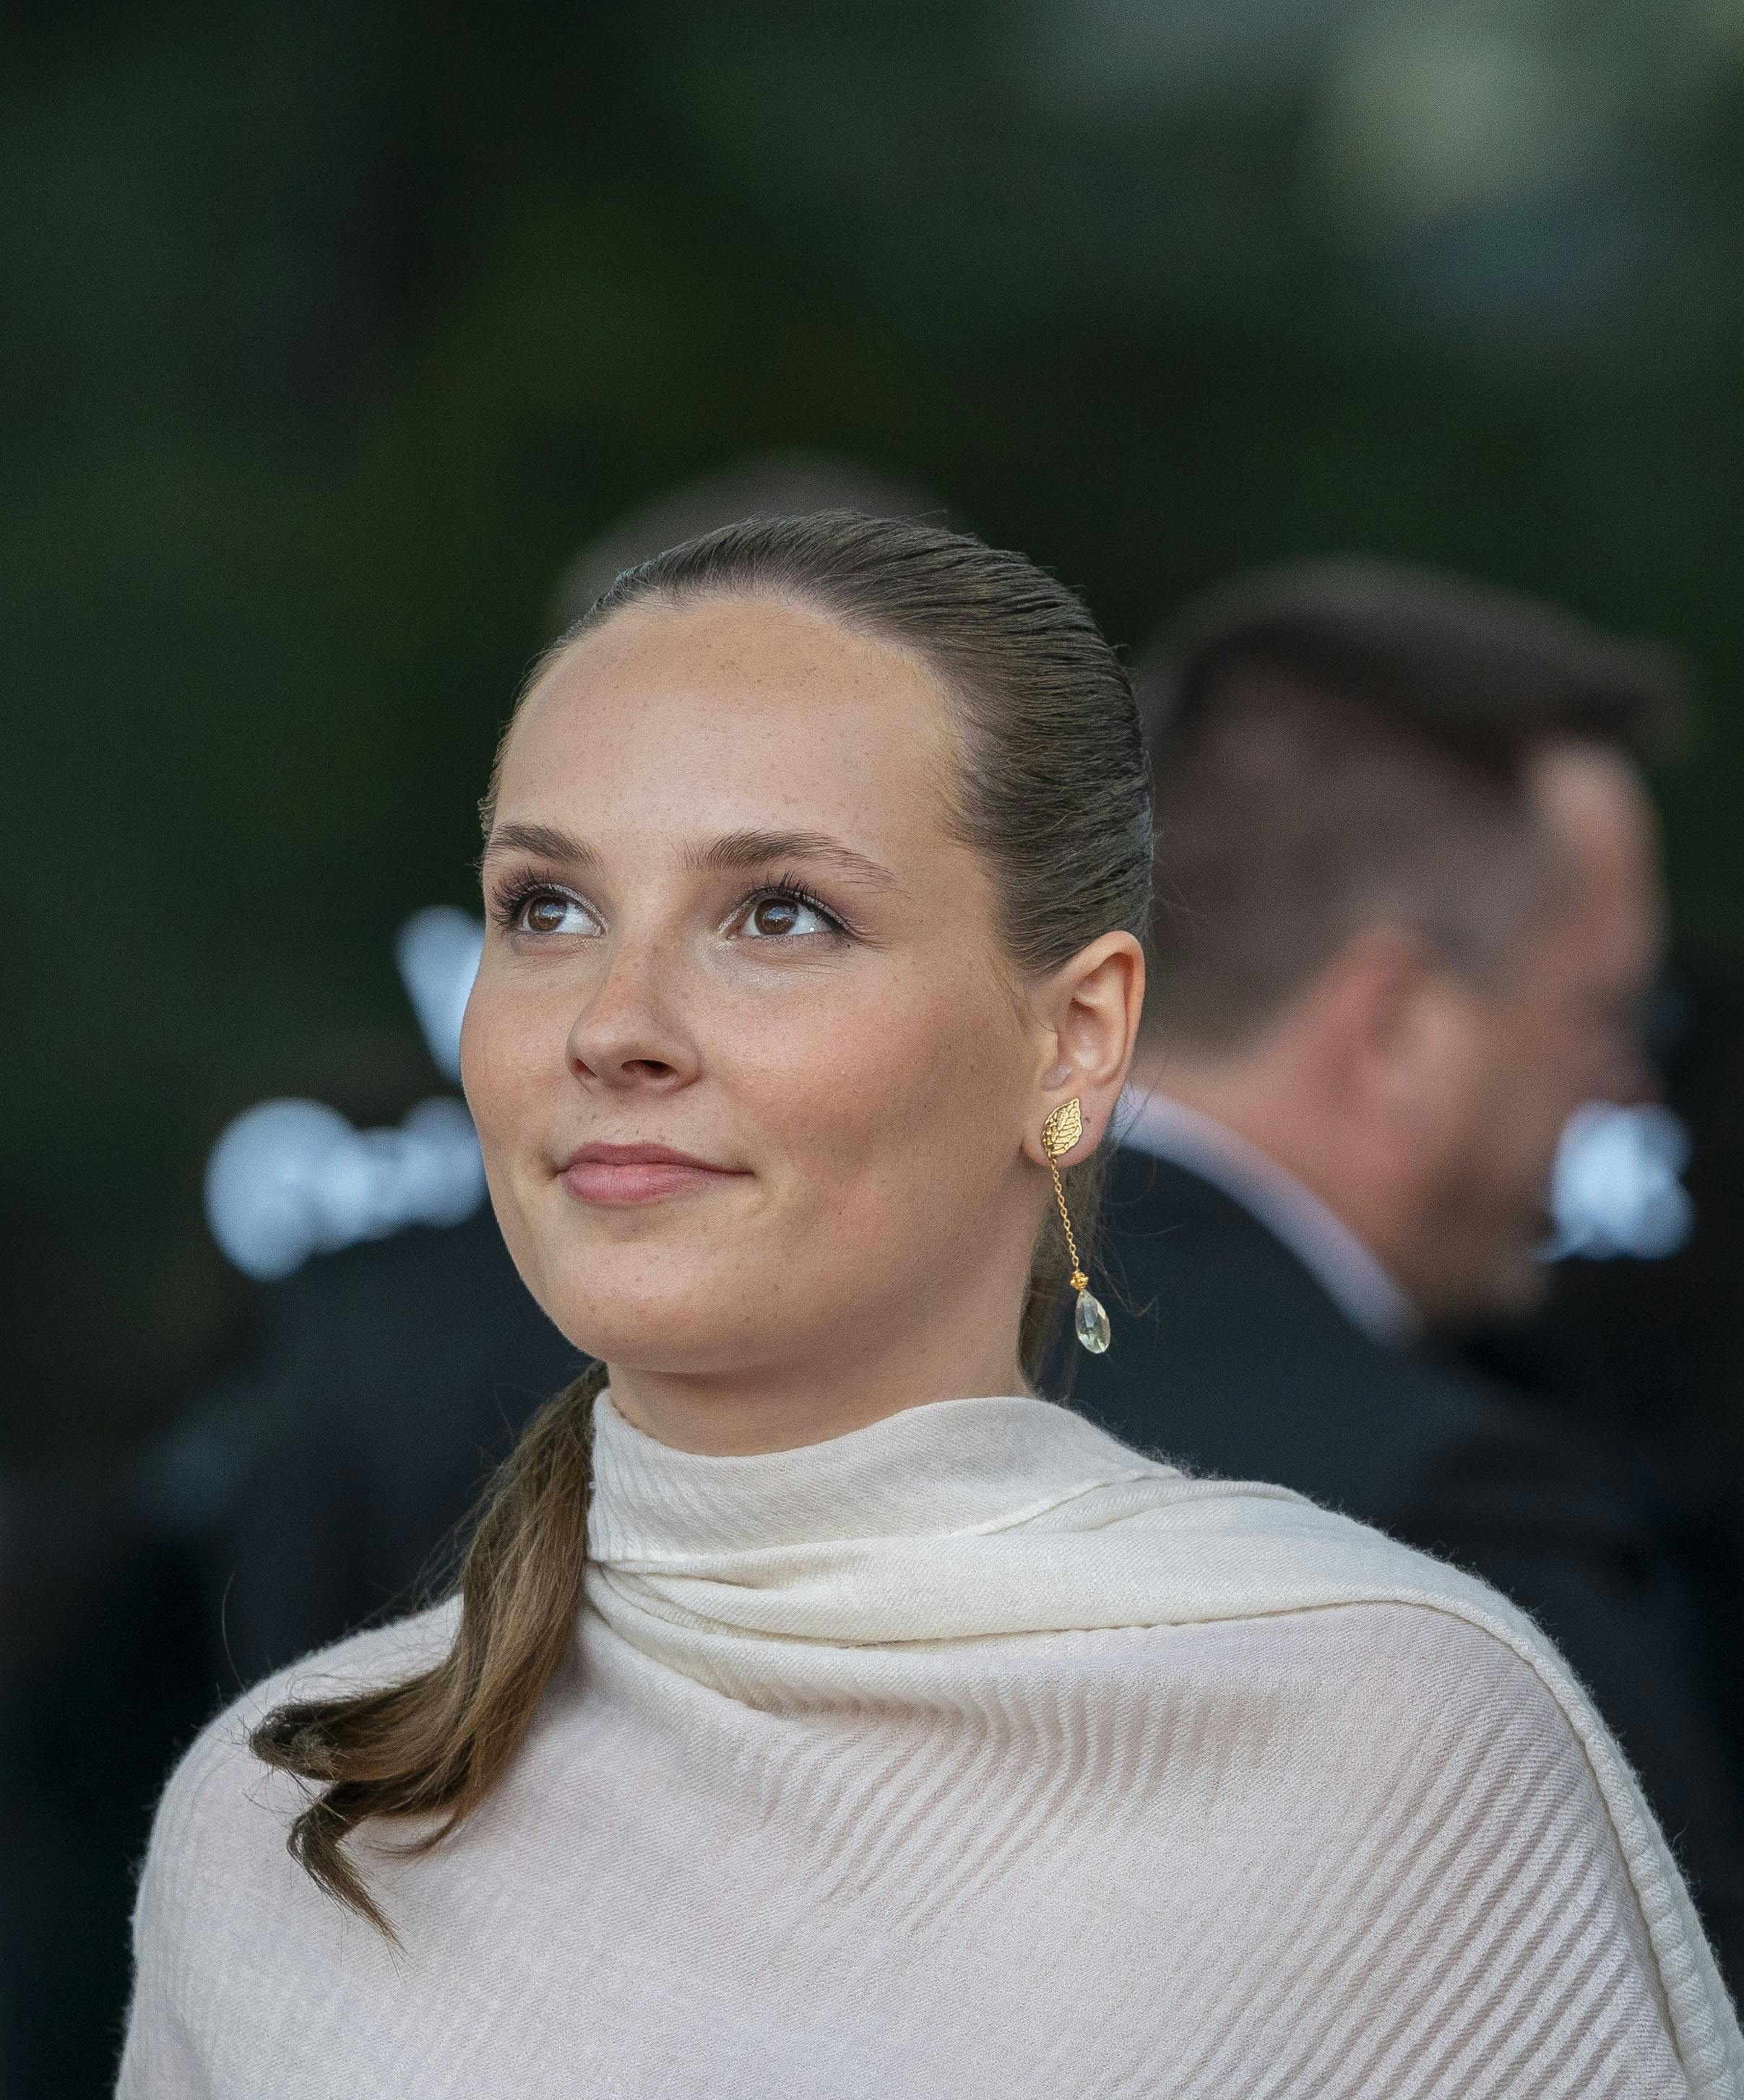 Prinsesse Ingrid Alexandra fejrede sin 18-års fødselsdag i Oslo med både festmiddag og officiel slotsfejring - endda sammen med sin hemmelige kæreste